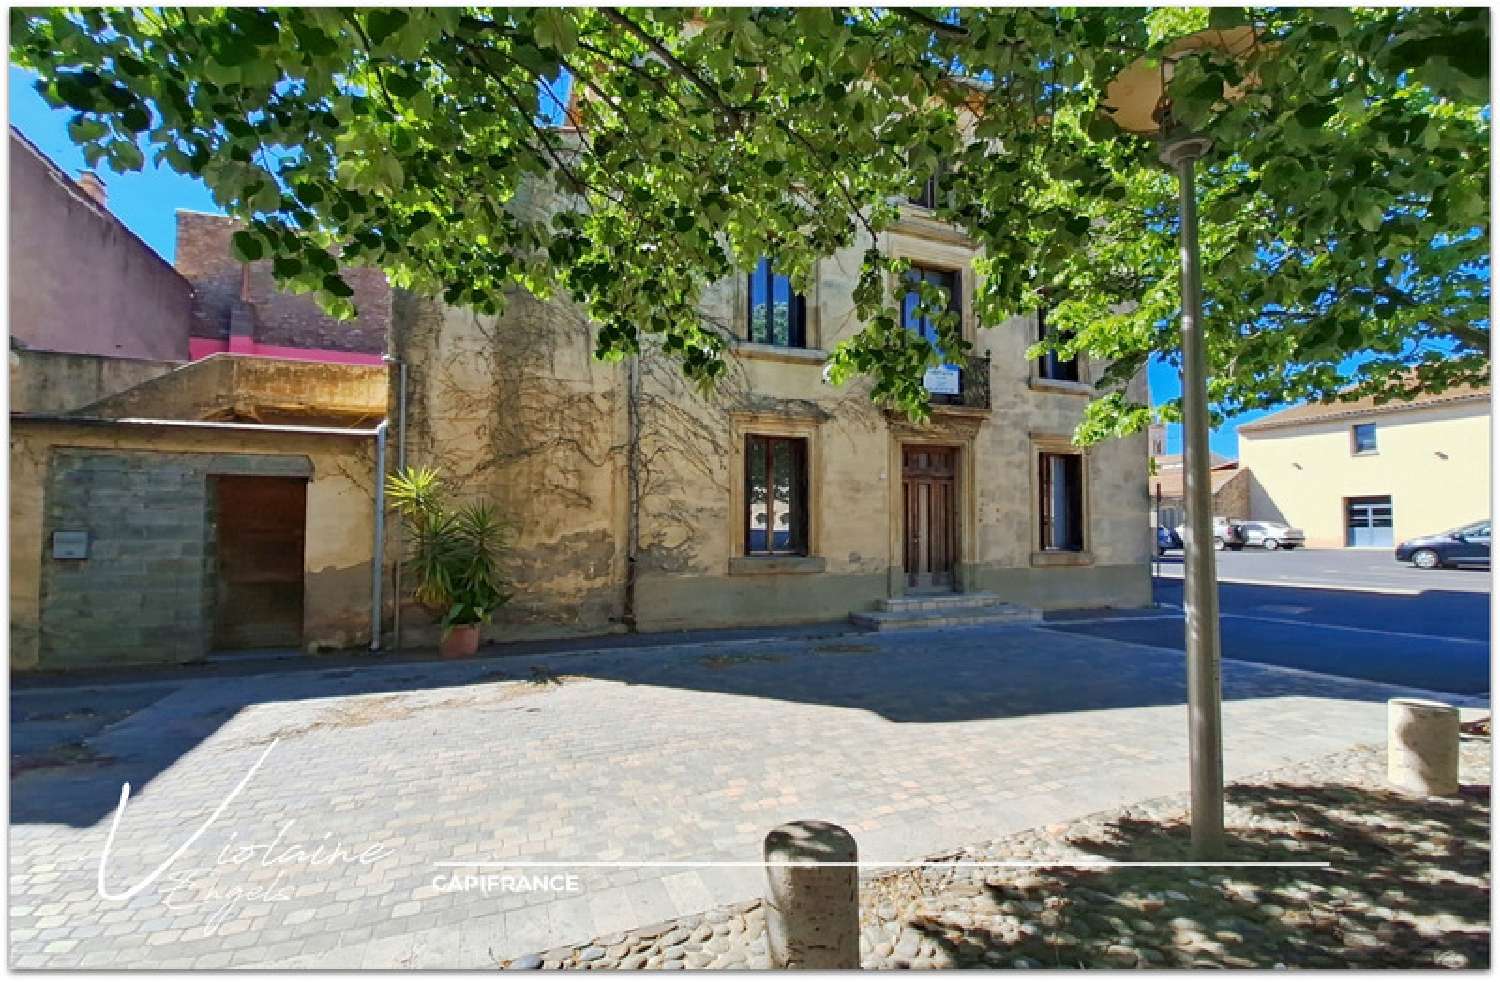  for sale village house Olonzac Hérault 1